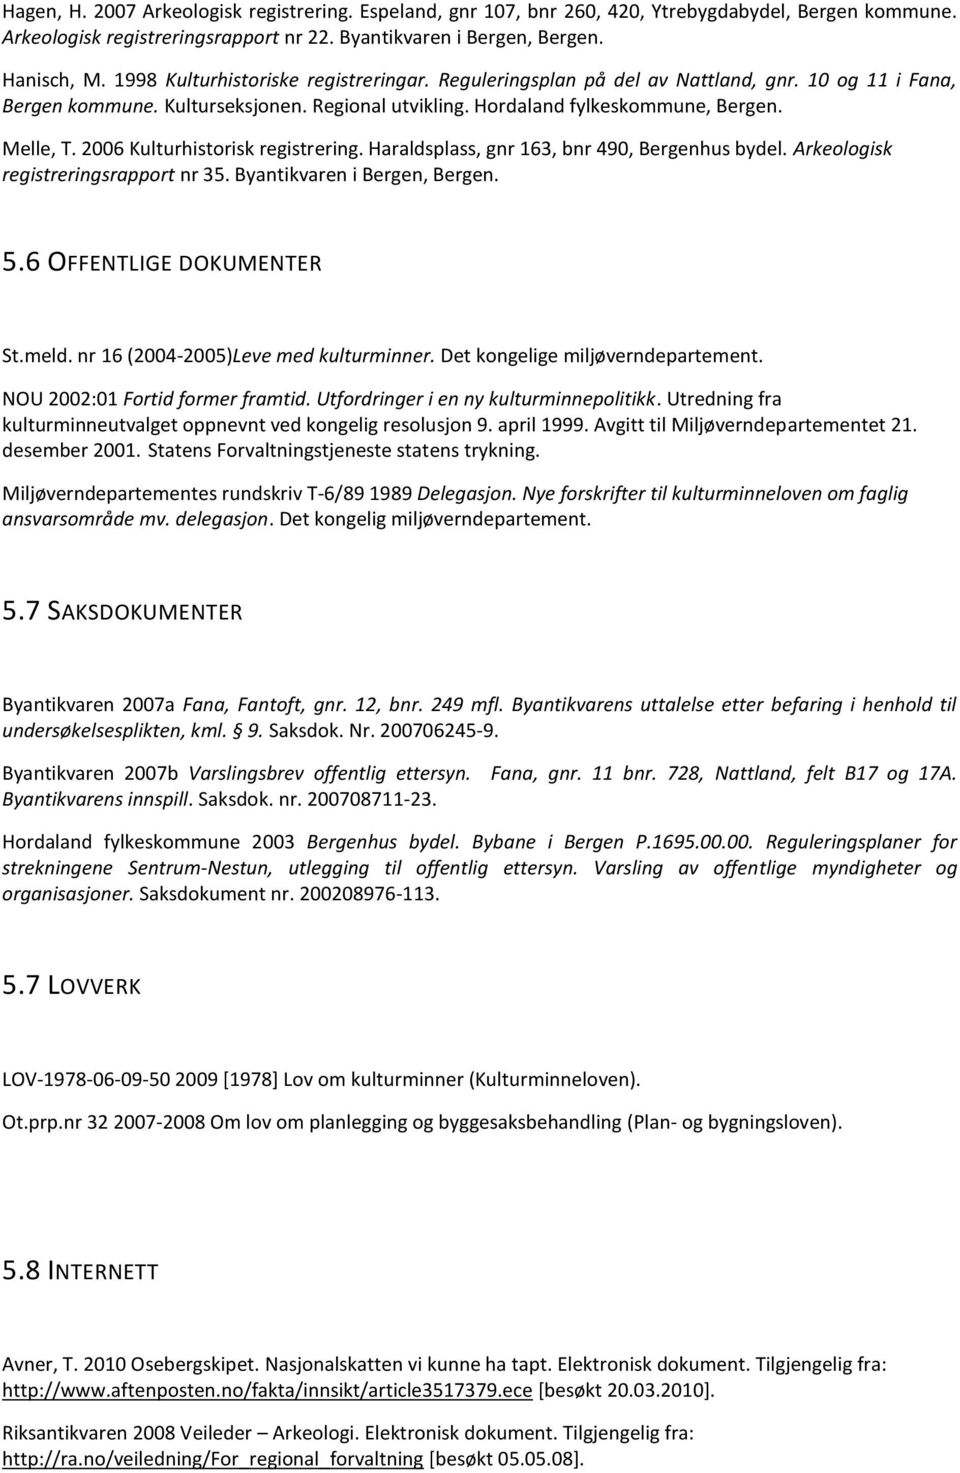 2006 Kulturhistorisk registrering. Haraldsplass, gnr 163, bnr 490, Bergenhus bydel. Arkeologisk registreringsrapport nr 35. Byantikvaren i Bergen, Bergen. 5.6 OFFENTLIGE DOKUMENTER St.meld.